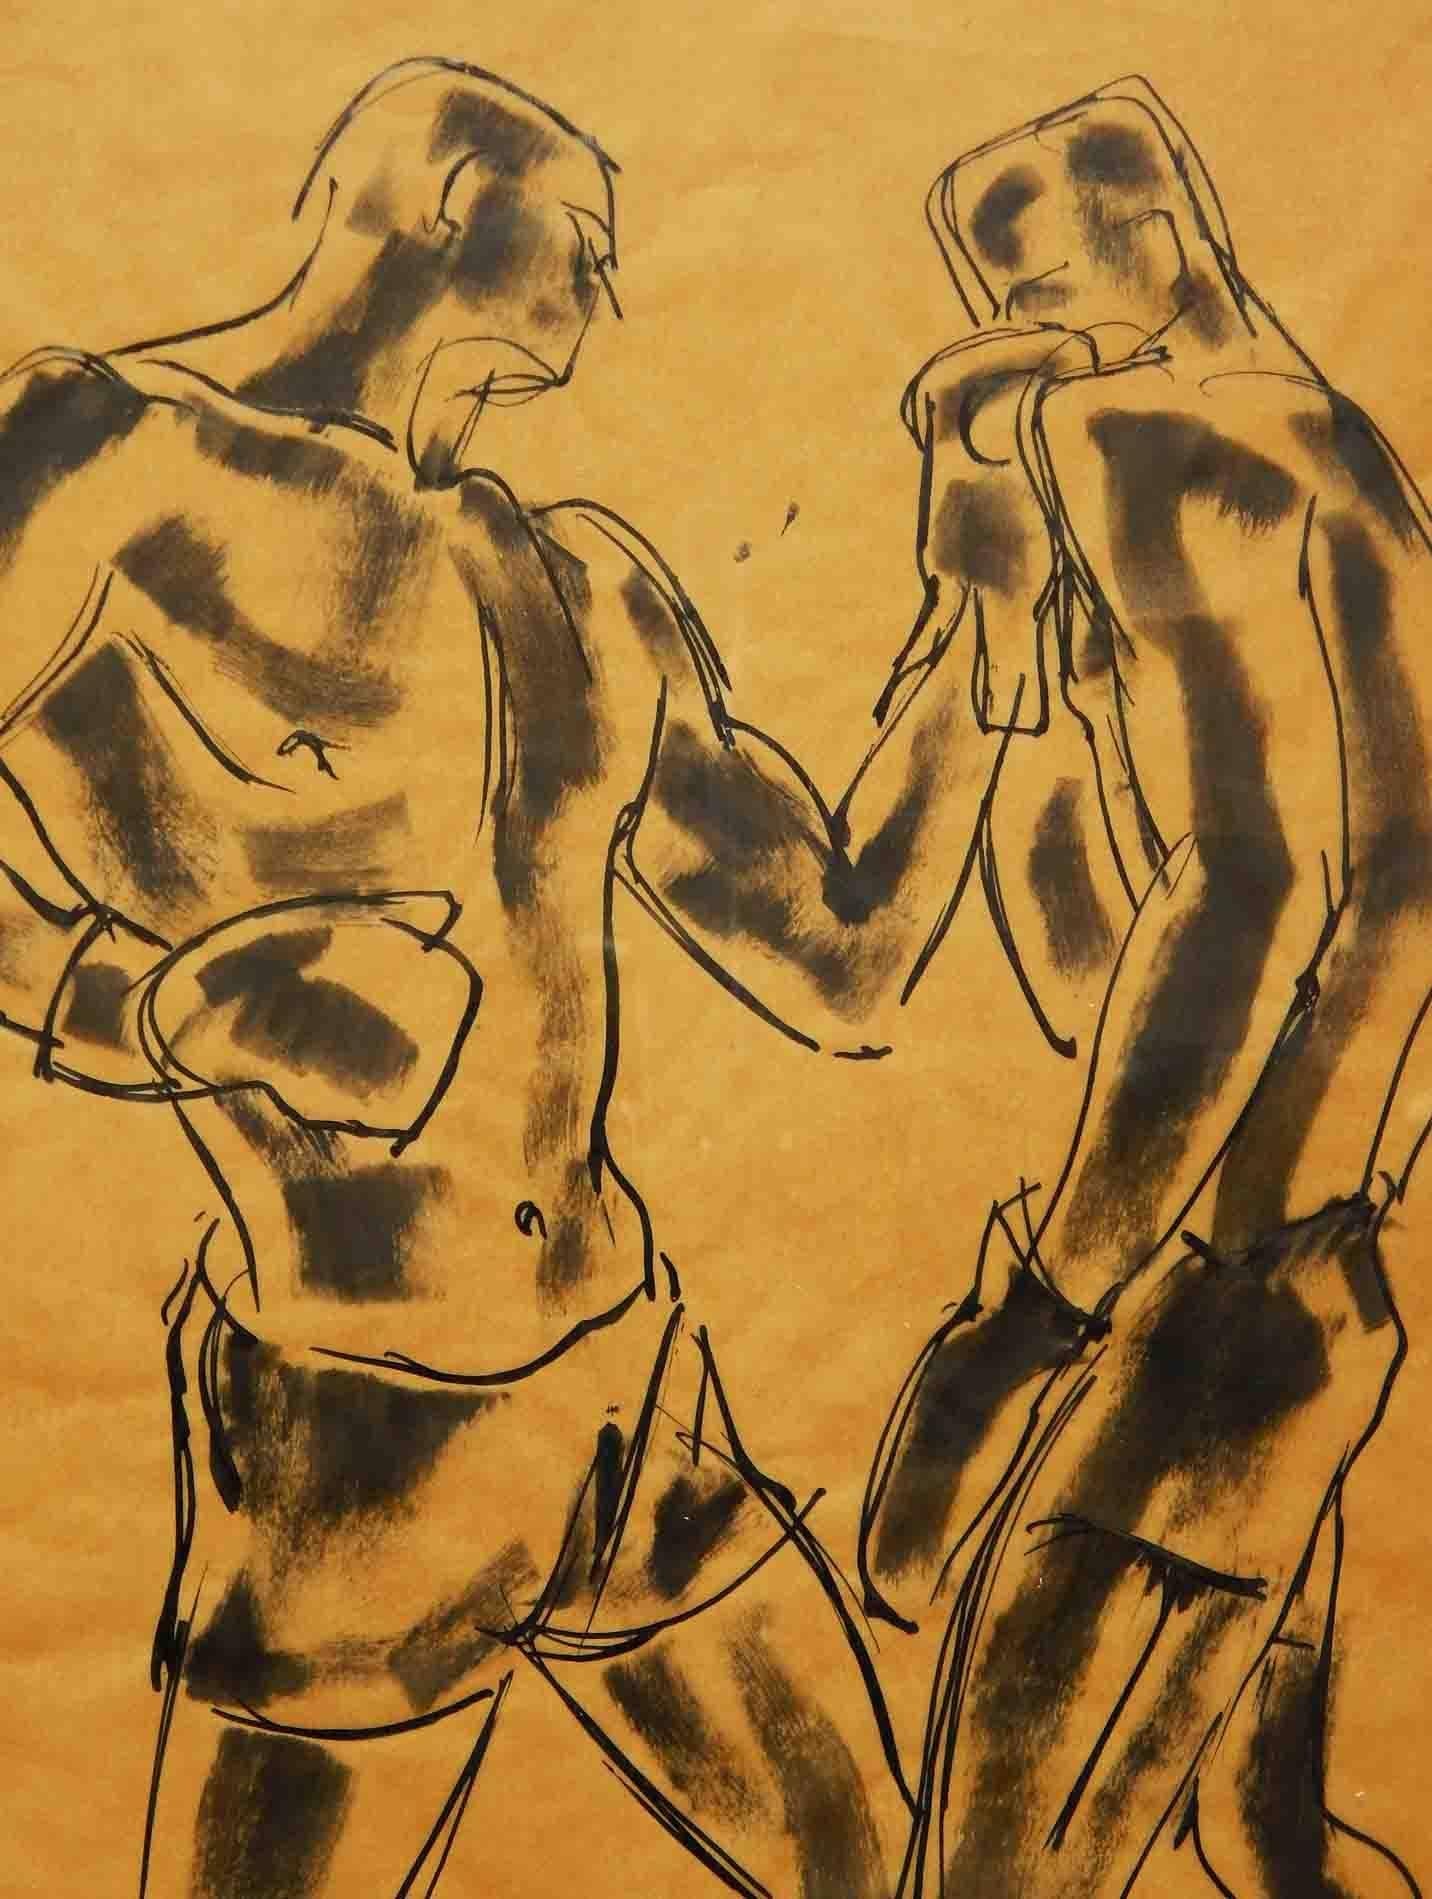 William Littlefield était fasciné par les boxeurs, qu'il a capturés à maintes reprises dans les années 1920 et 1930, publiant une série de tirages et produisant une série de dessins vifs et saisissants. Chaque dessin montre sa capacité à utiliser